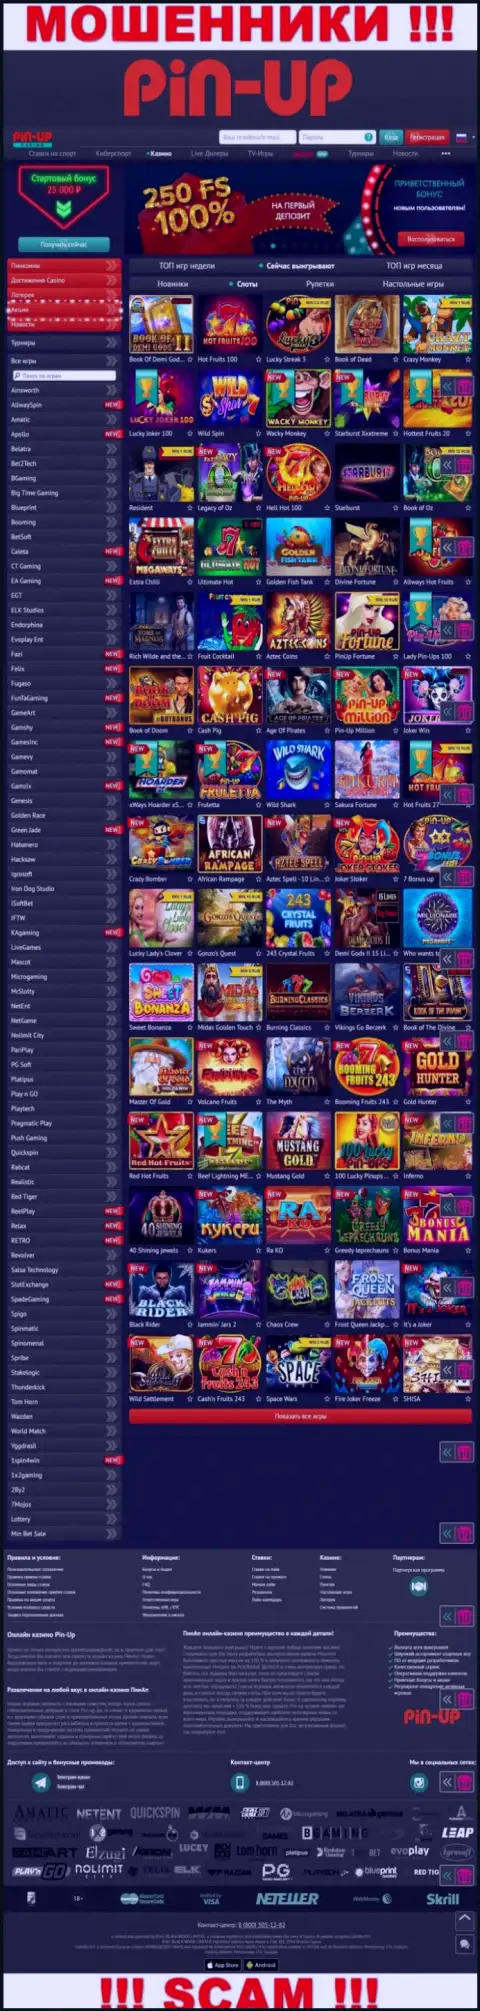 Pin-Up Casino - это web-сайт мошенников Пин Ап Казино